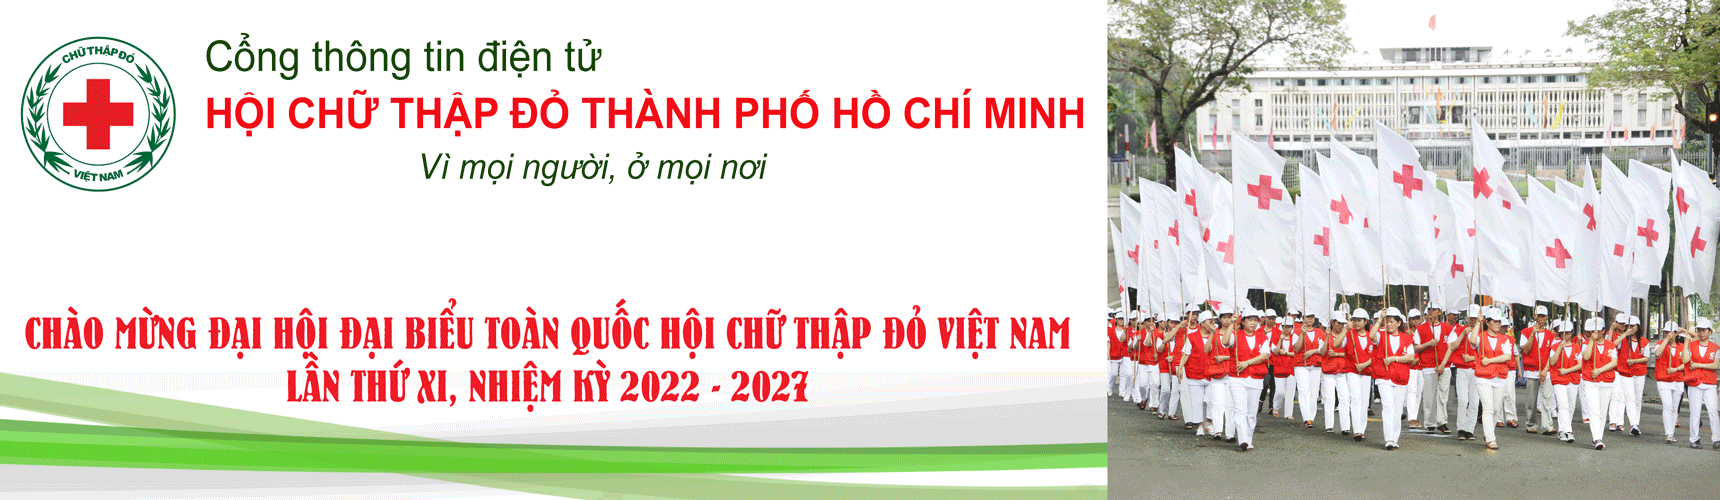 Hội Chữ thập đỏ Thành phố Hồ Chí Minh